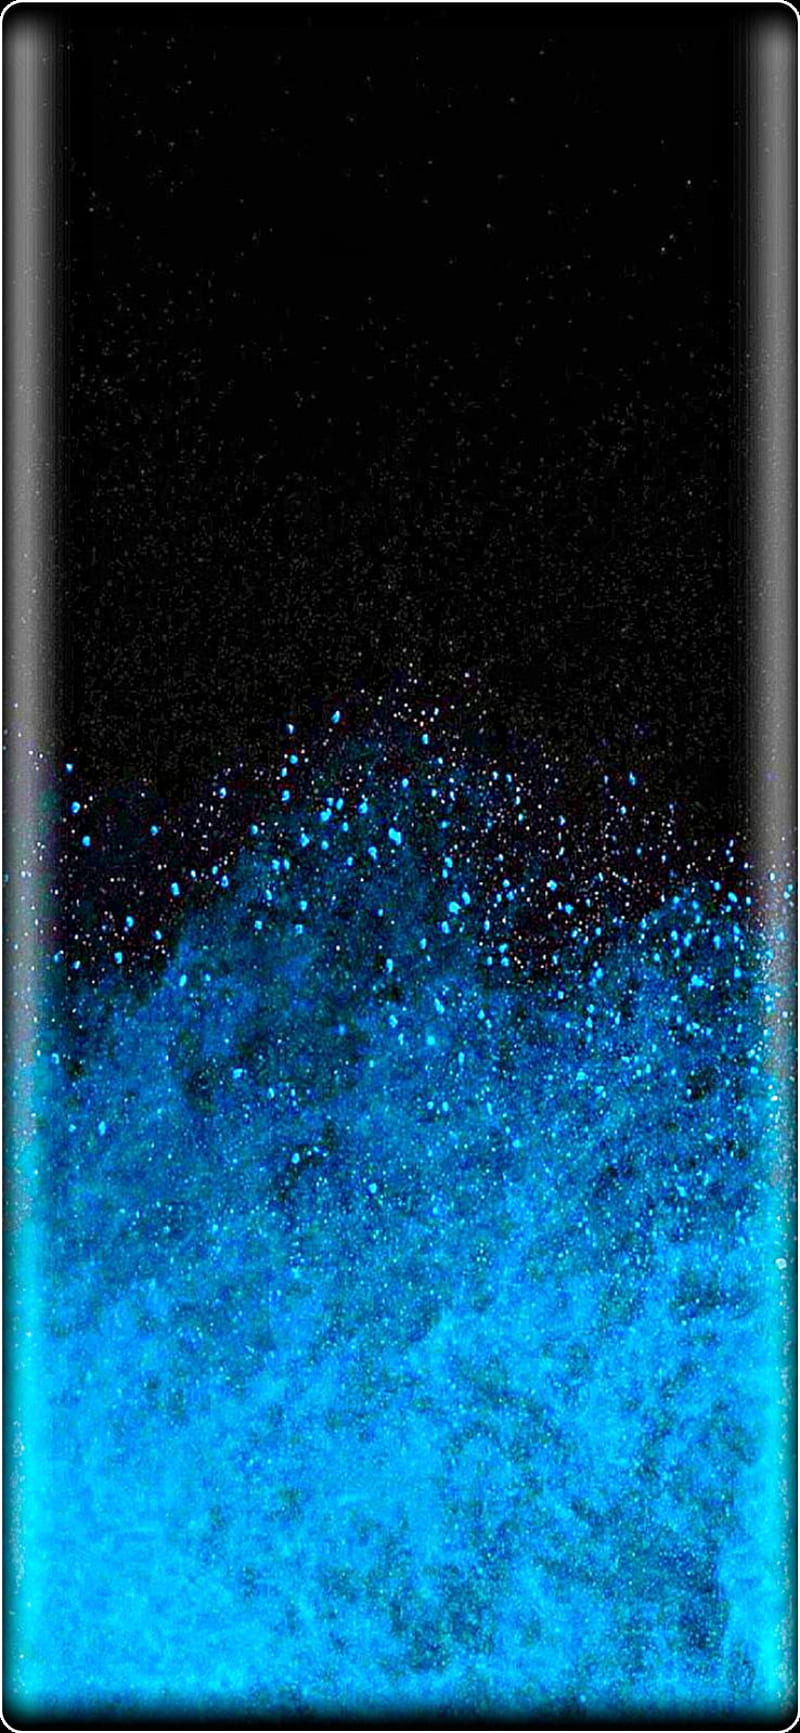 Hình nền Samsung S21 HD phone giản dị nhưng không kém phần quyến rũ, sẽ khiến cho bạn phải đắm mình trong nó. Với độ phân giải cao, các thiết kế độc đáo và ấn tượng sẽ mang đến cho bạn cảm giác mới lạ và cuốn hút. Hãy trang trí cho điện thoại của bạn với những hình nền tuyệt đẹp này ngay bây giờ!